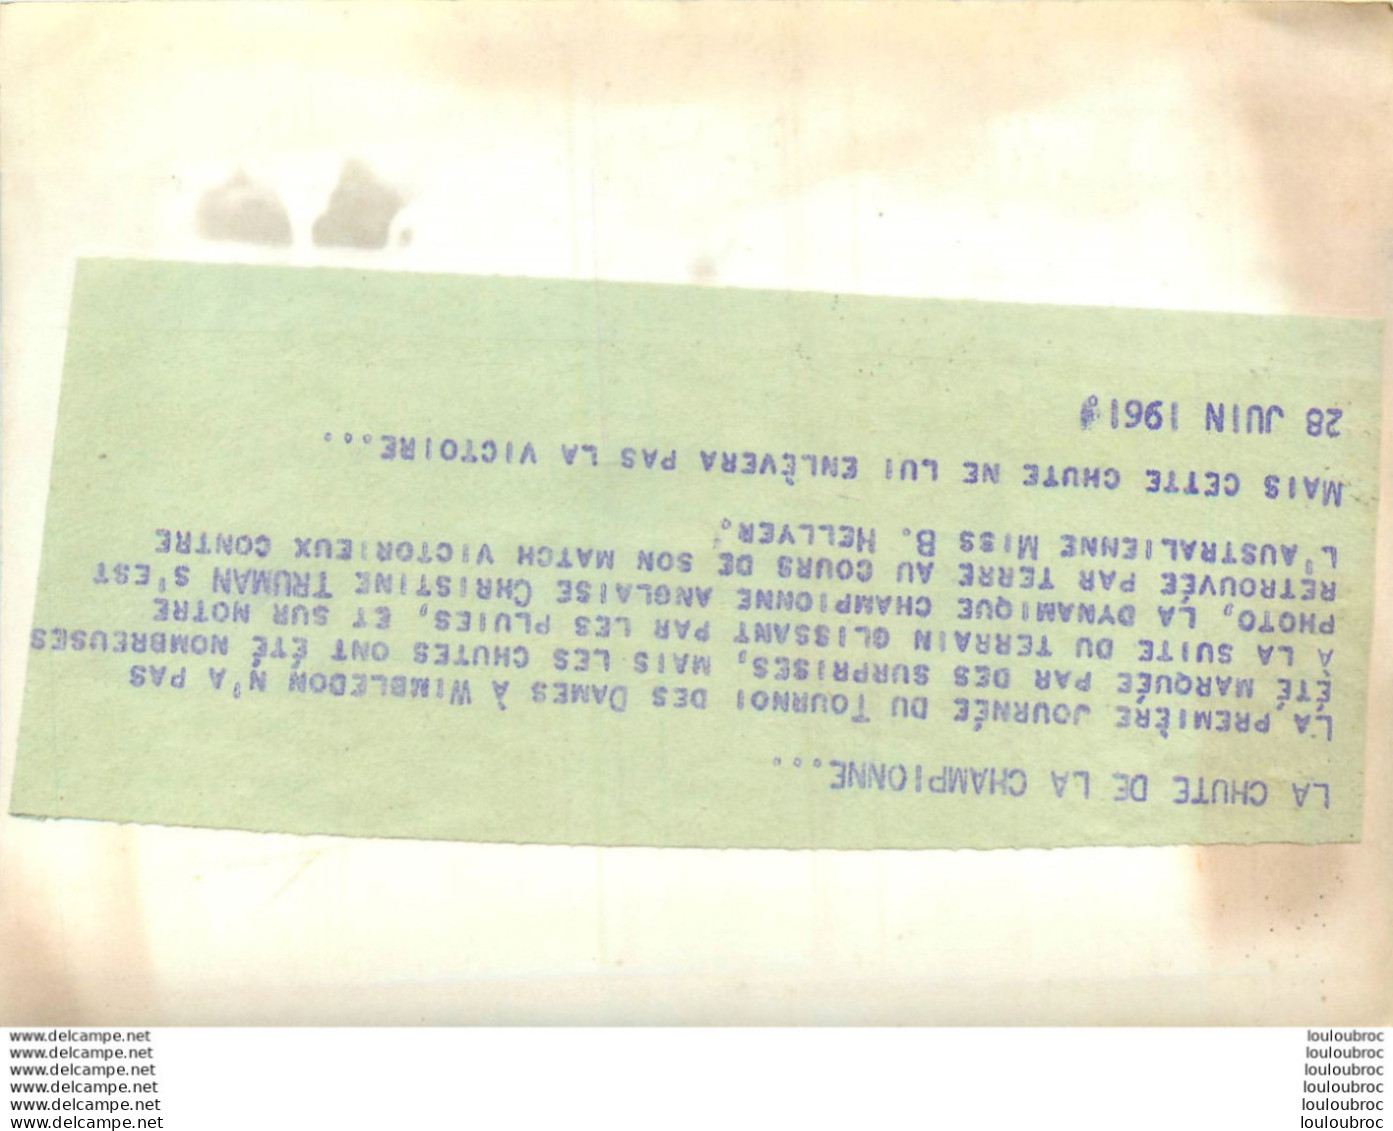 TENNIS WIMBLEDON 1961 CHRISTINE TRUMAN  CHUTE DANS SON MATCH GAGNE CONTRE HELLYER PHOTO DE PRESSE 18 X 13 CM - Sports